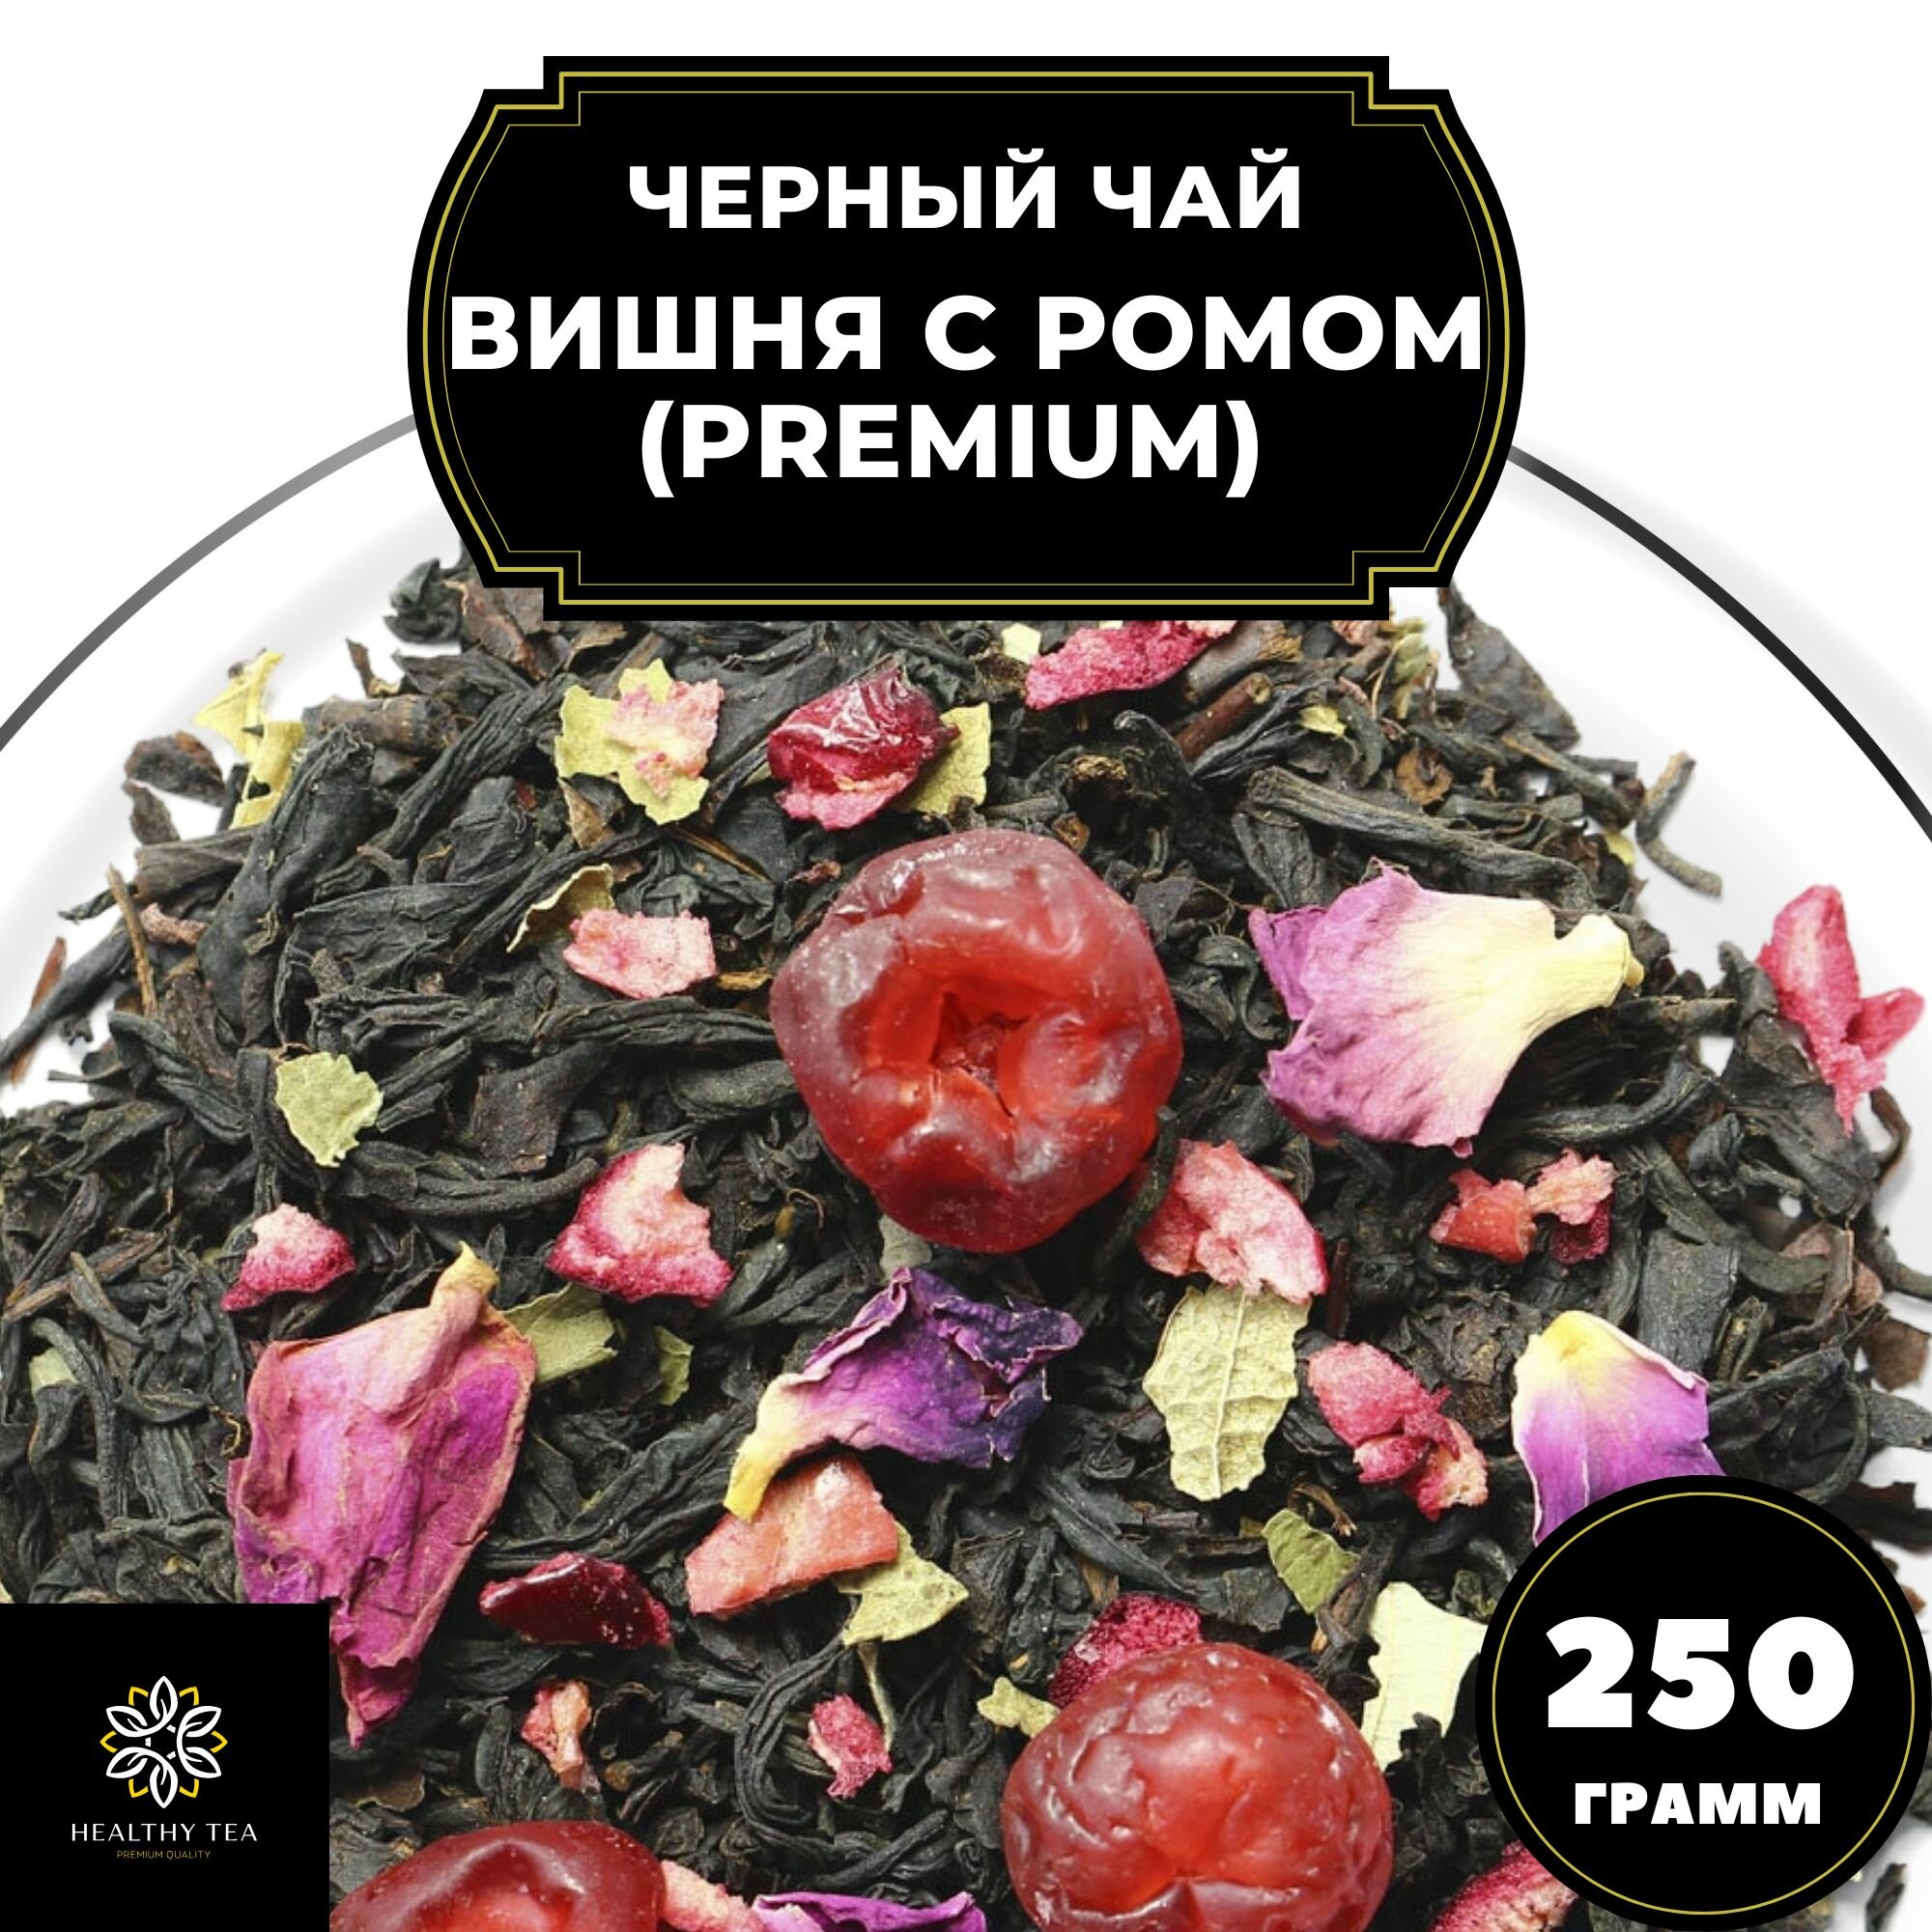 Индийский Черный чай с вишней, клюквой и розой "Вишня с ромом" (Premium) Полезный чай / HEALTHY TEA, 250 гр